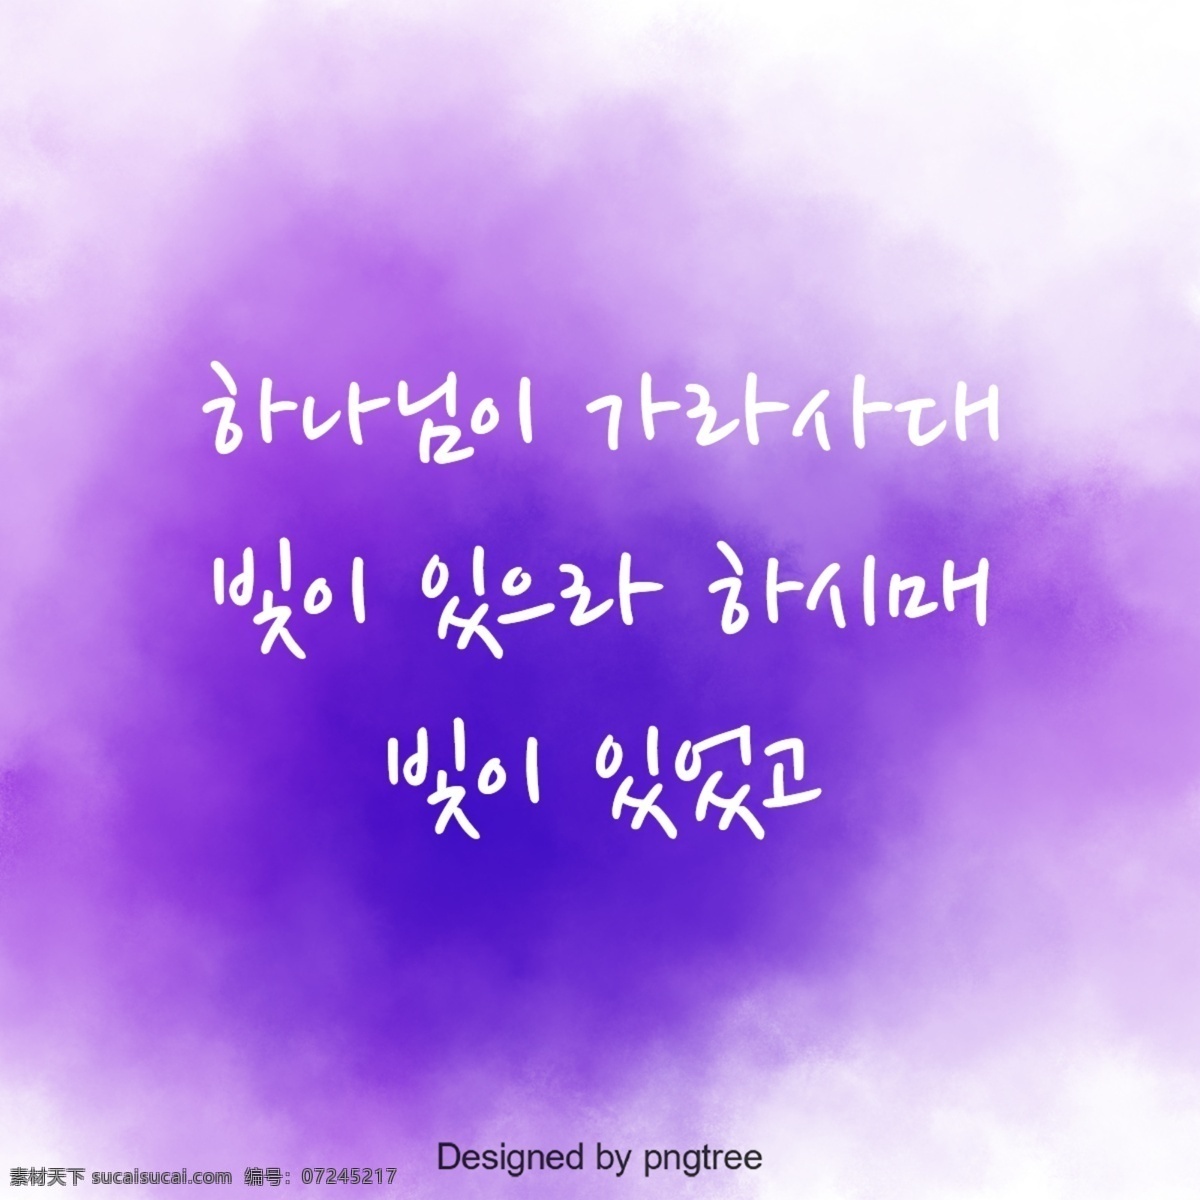 圣经 字符 紫色 水彩 背景 紫蓝色 基督教 素食主义者 文本 模糊 手写 谢和 宗教 书法 韩文 合成图像